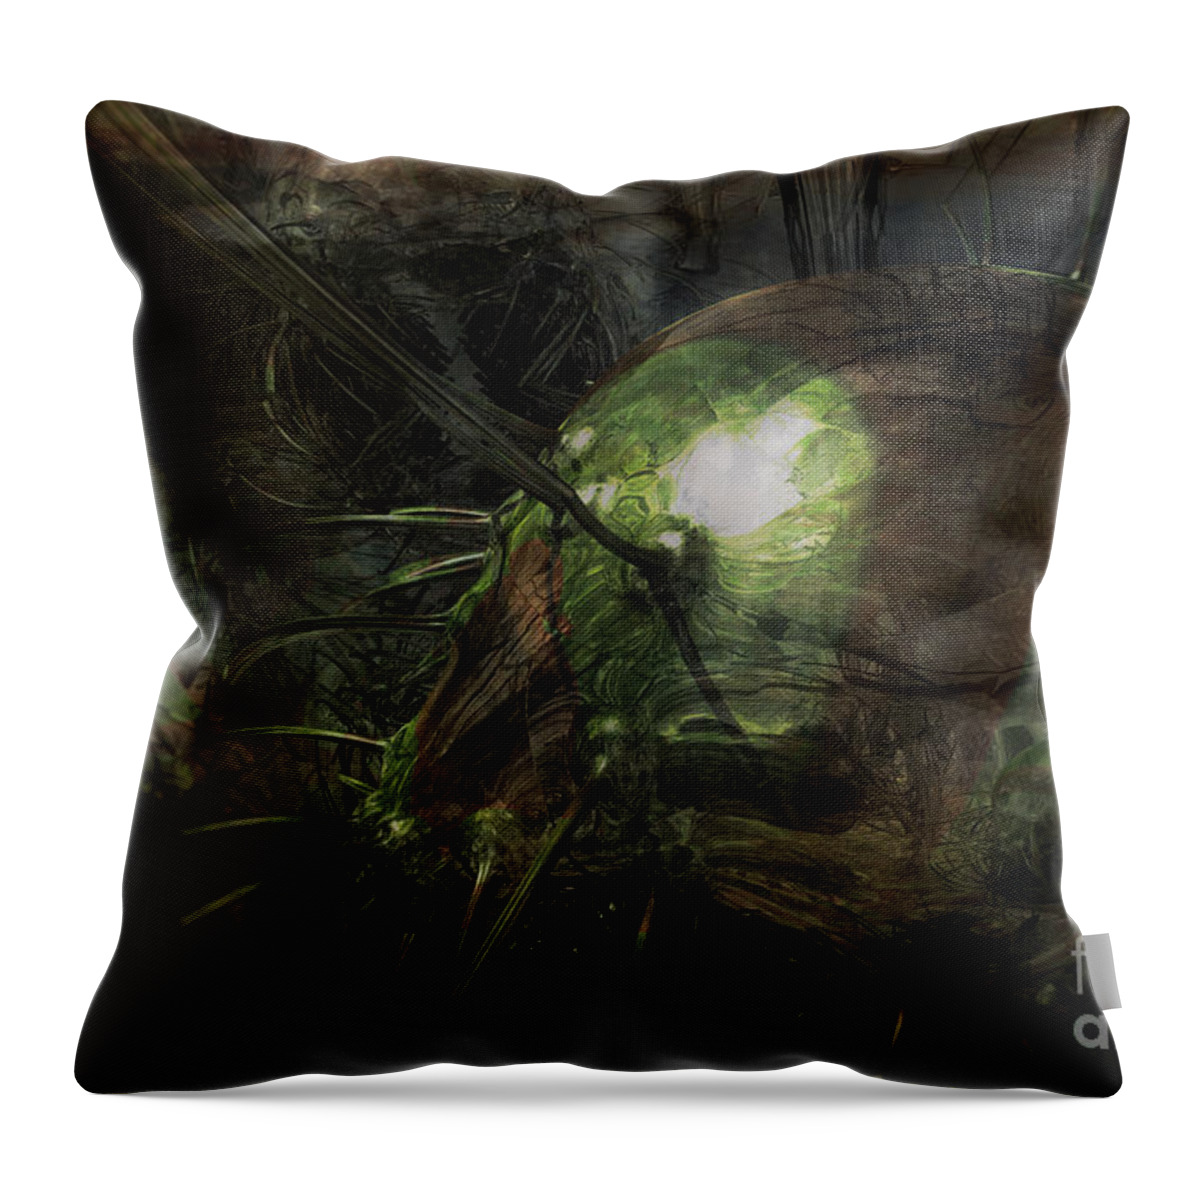 Alien Throw Pillow featuring the digital art Hibernation by Jonas Luis